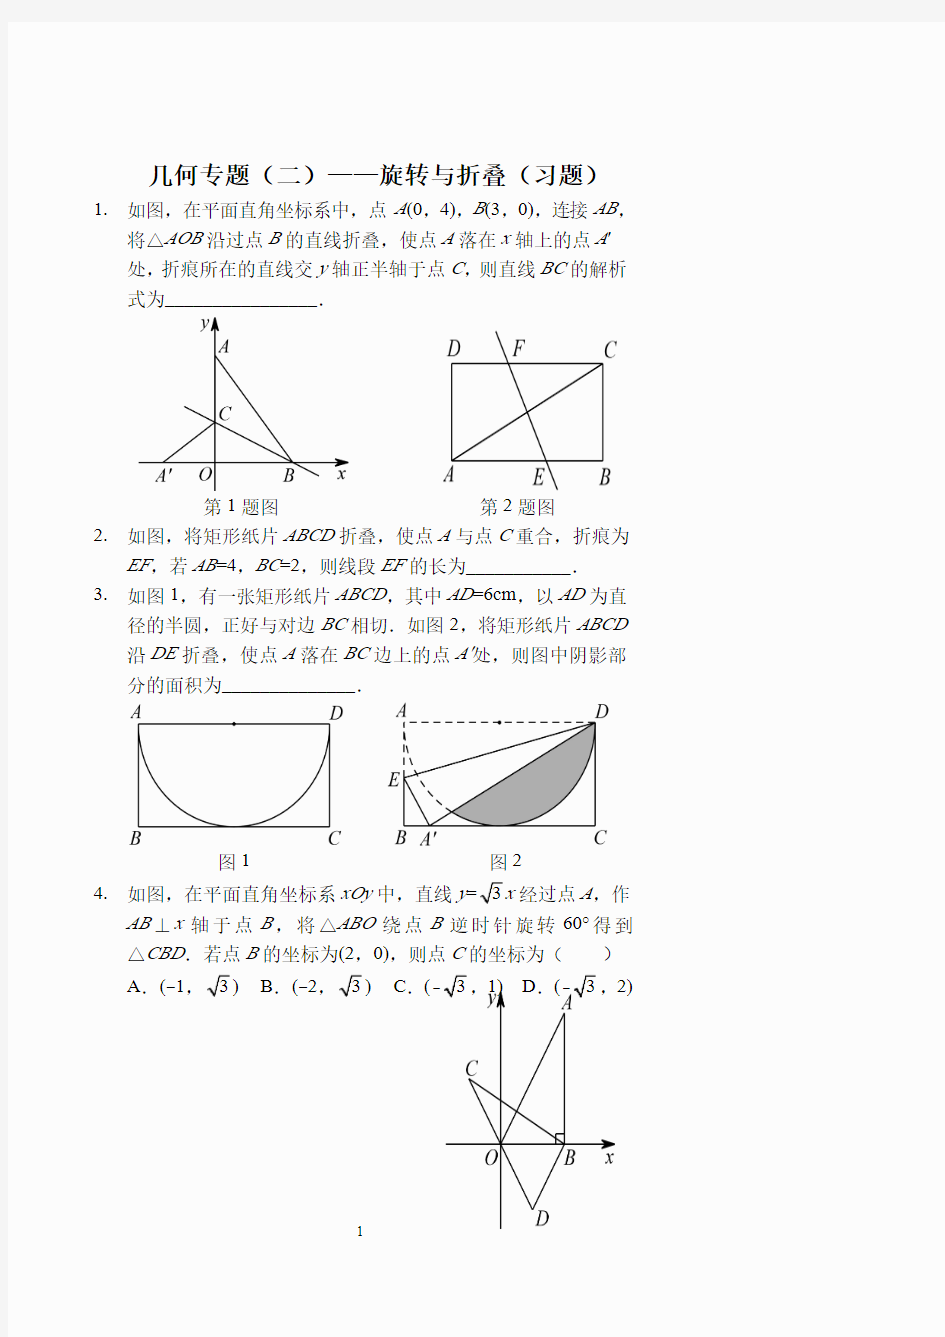 几何专题(二)——旋转与折叠(习题及答案)